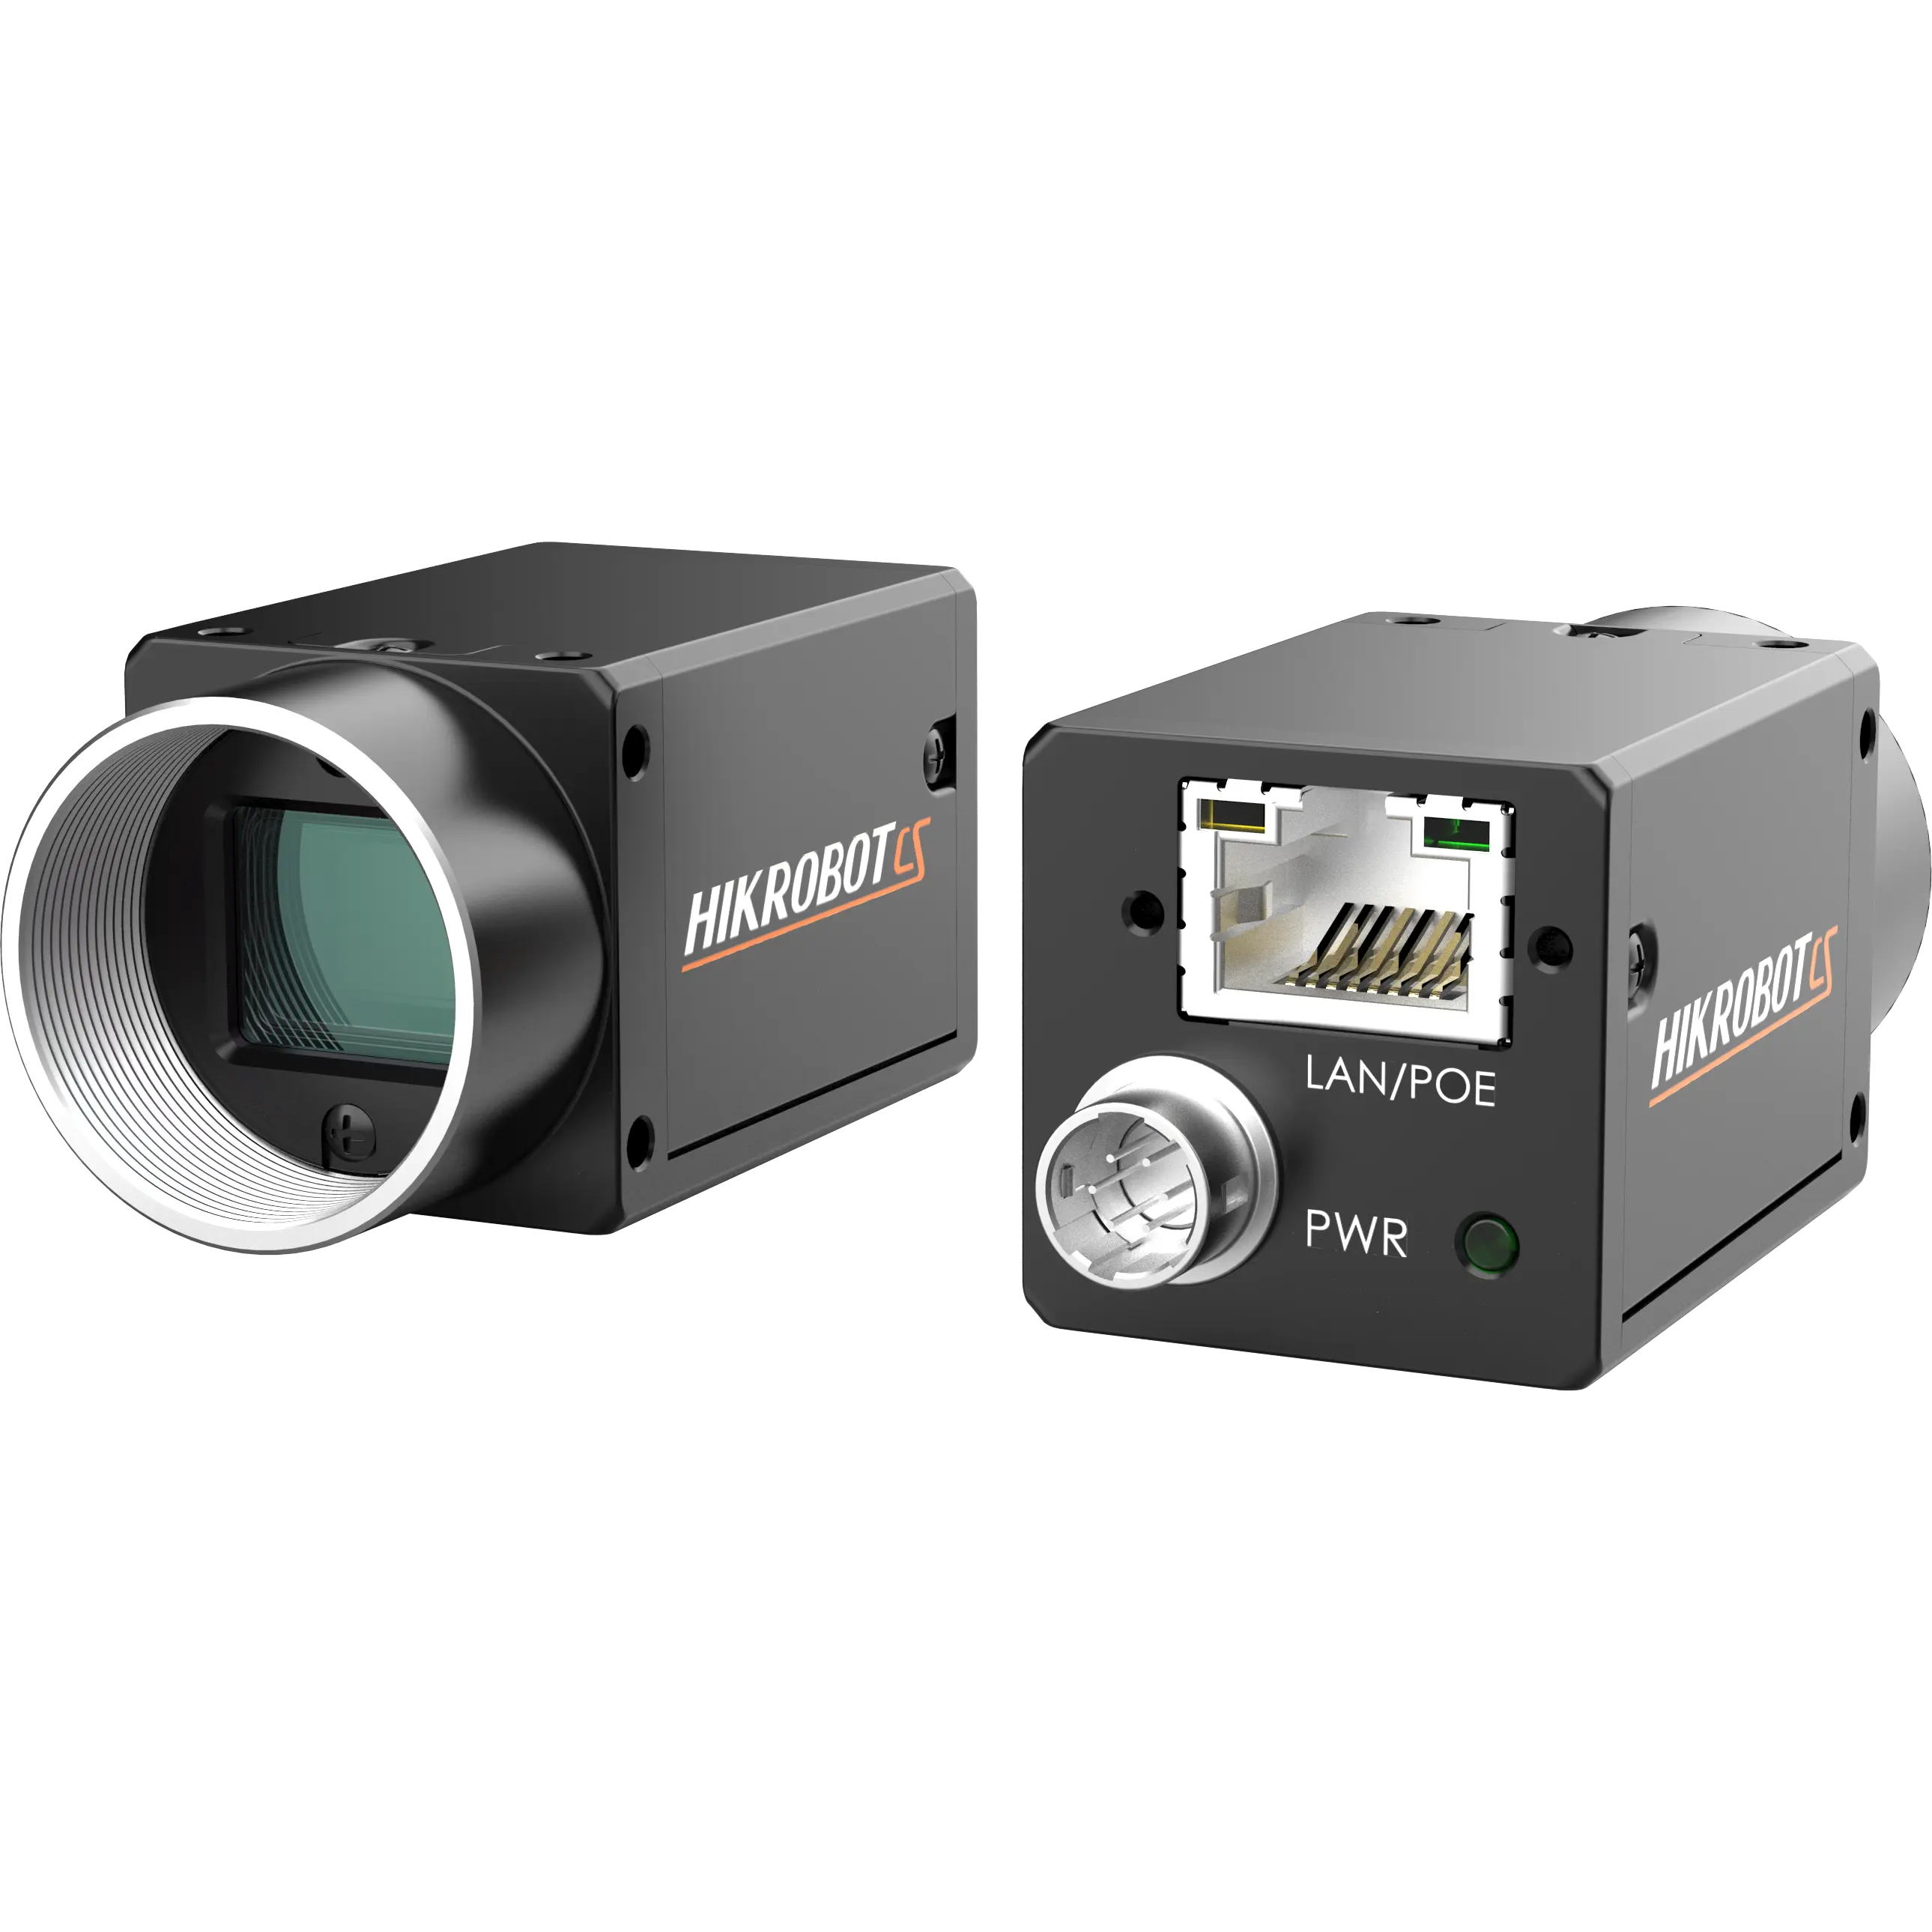 Ethernet Global Shutter CMOS de alta velocidad Industrial Scan Array cámaras analógicas fabricación endoscopio inspección de visión artificial